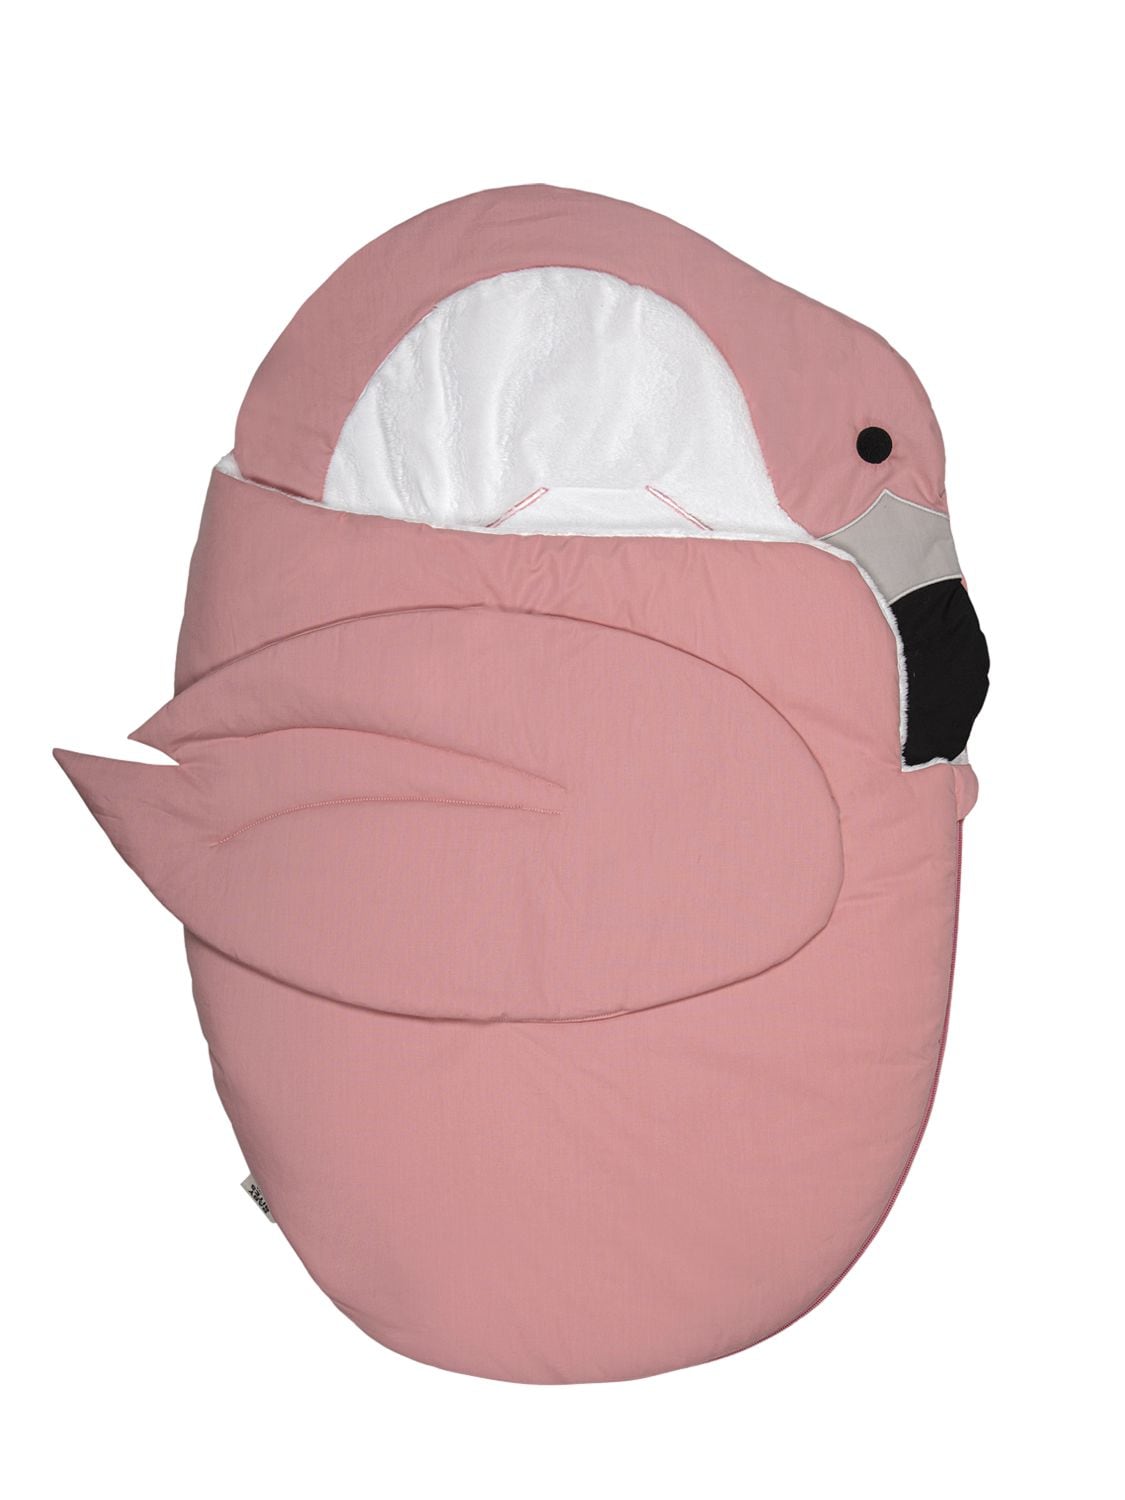 Image of Flamingo Cotton Baby Sleeping Bag